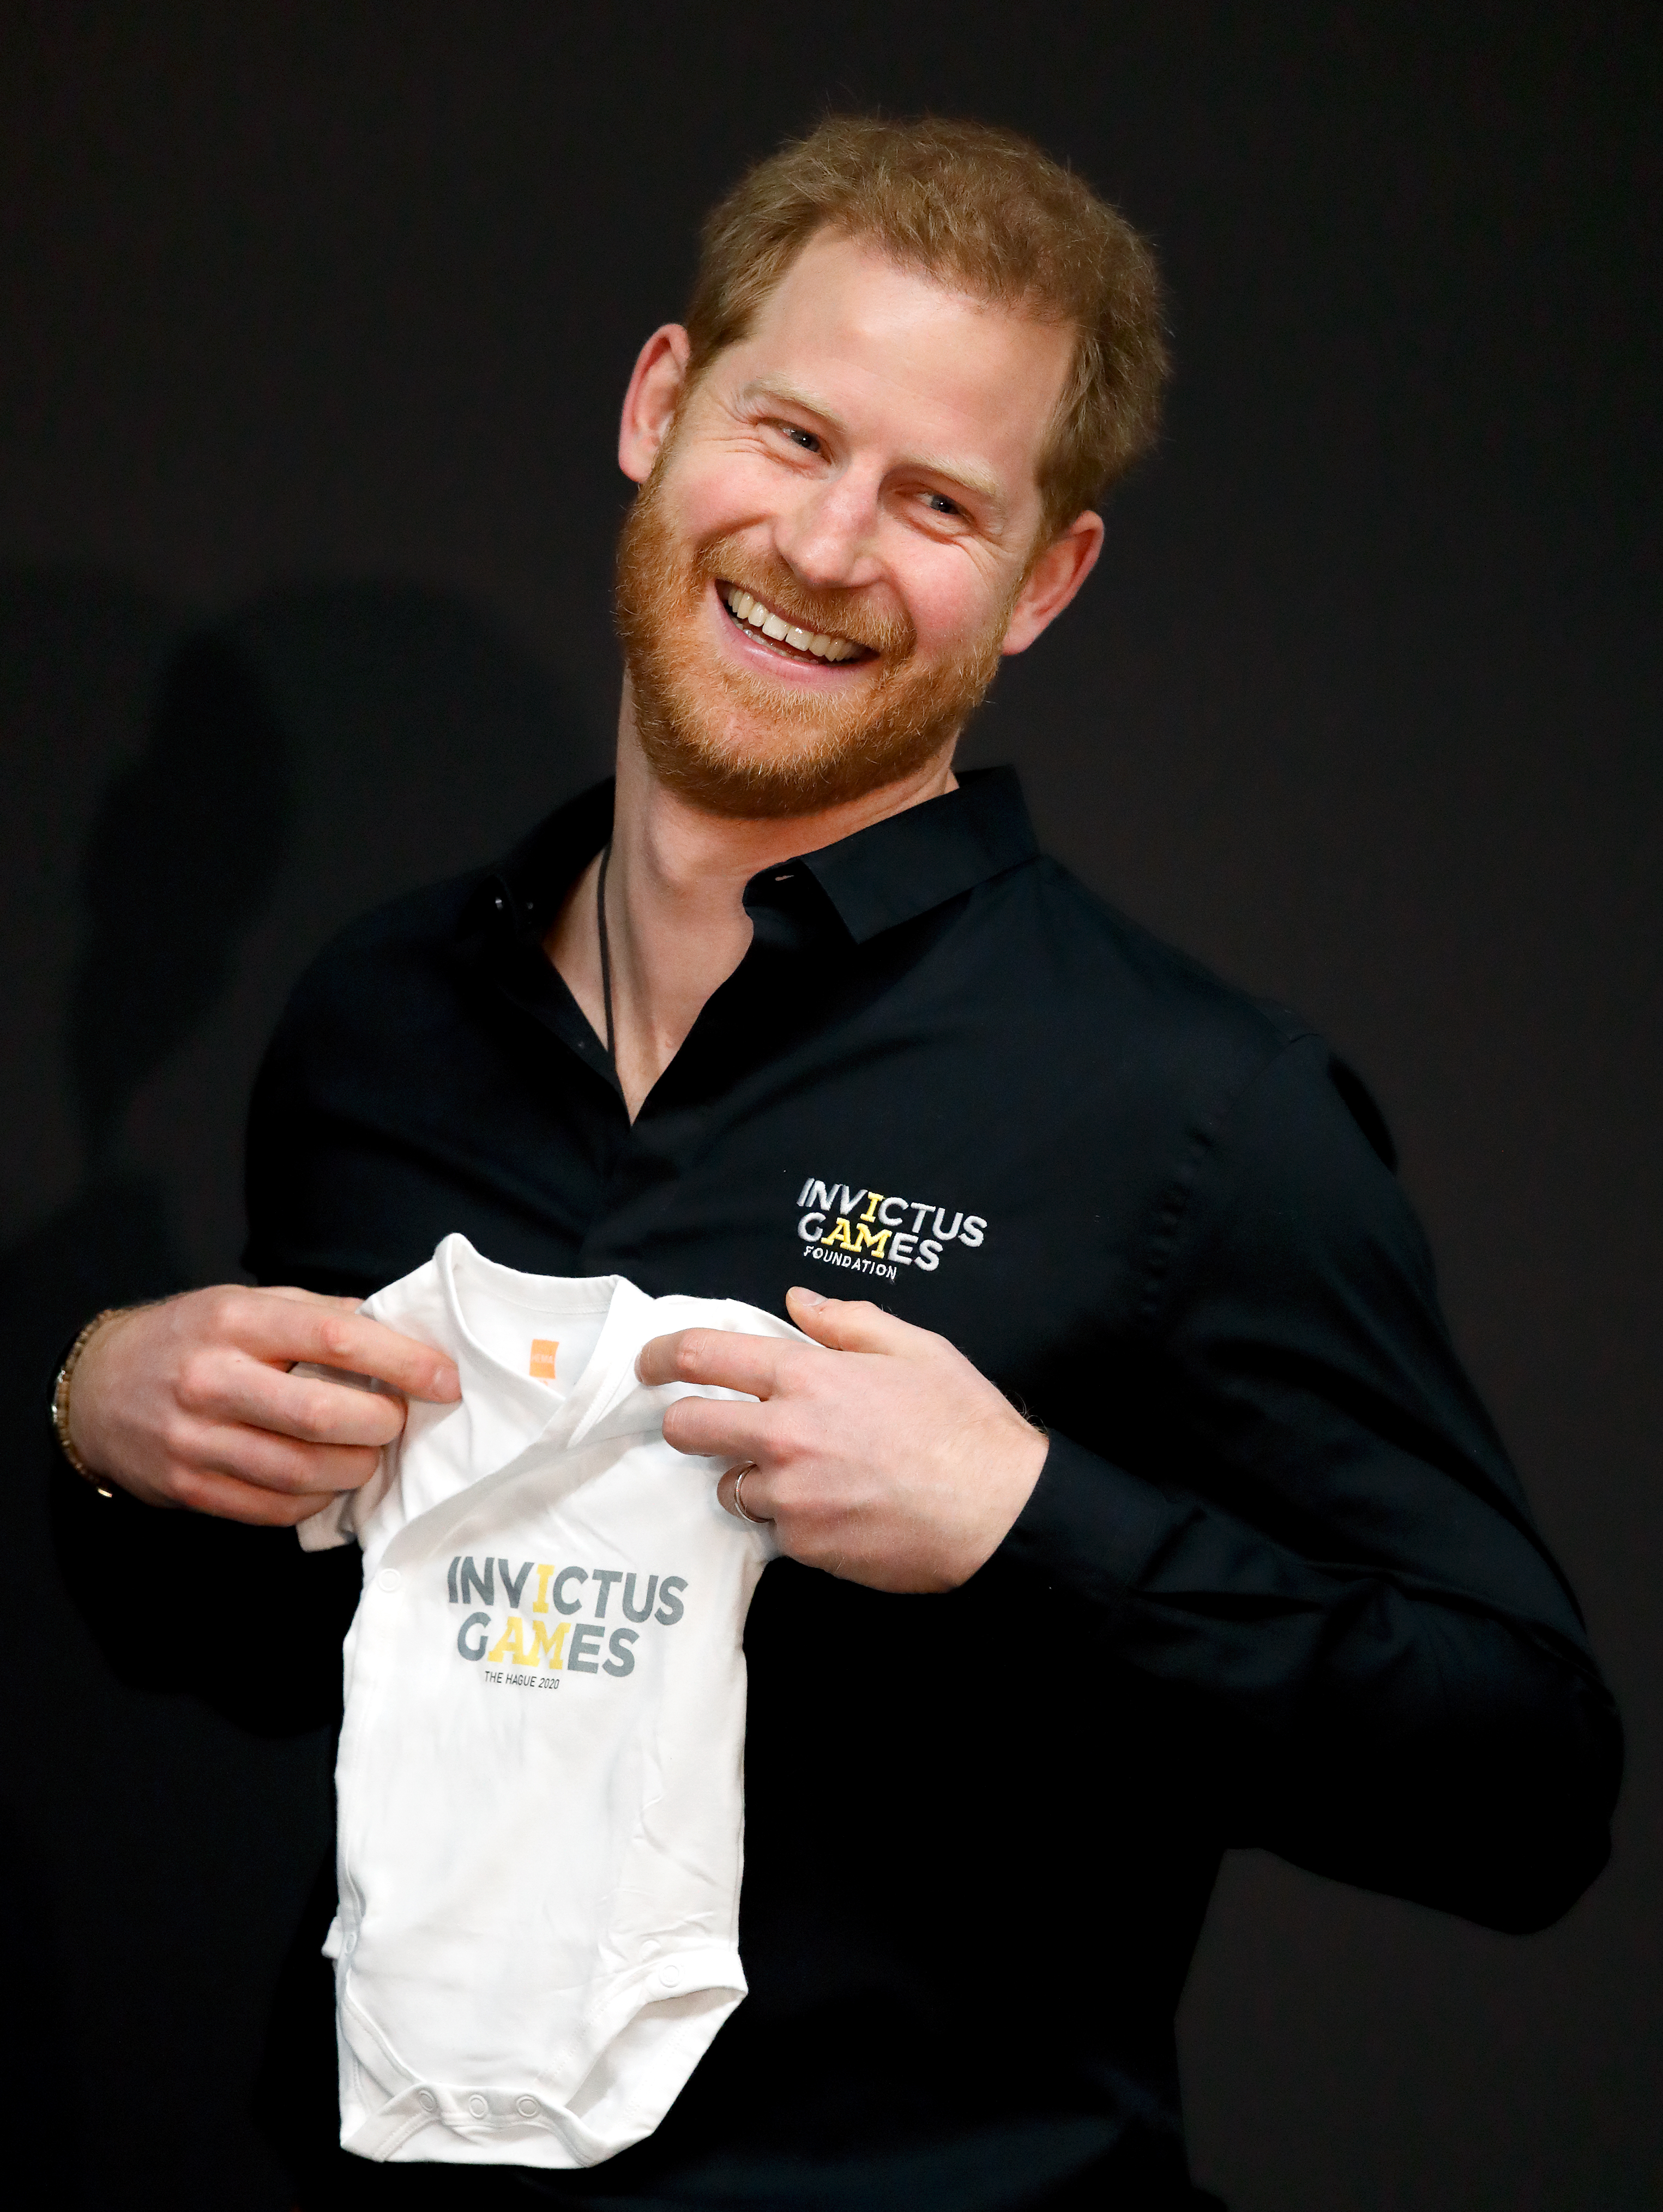 El príncipe Harry, duque de Sussex, recibe un bebé de los Juegos Invictus para Archie durante el lanzamiento oficial de los Juegos Invictus en La Haya, Países Bajos, el 9 de mayo de 2019. | Fuente: Getty Images